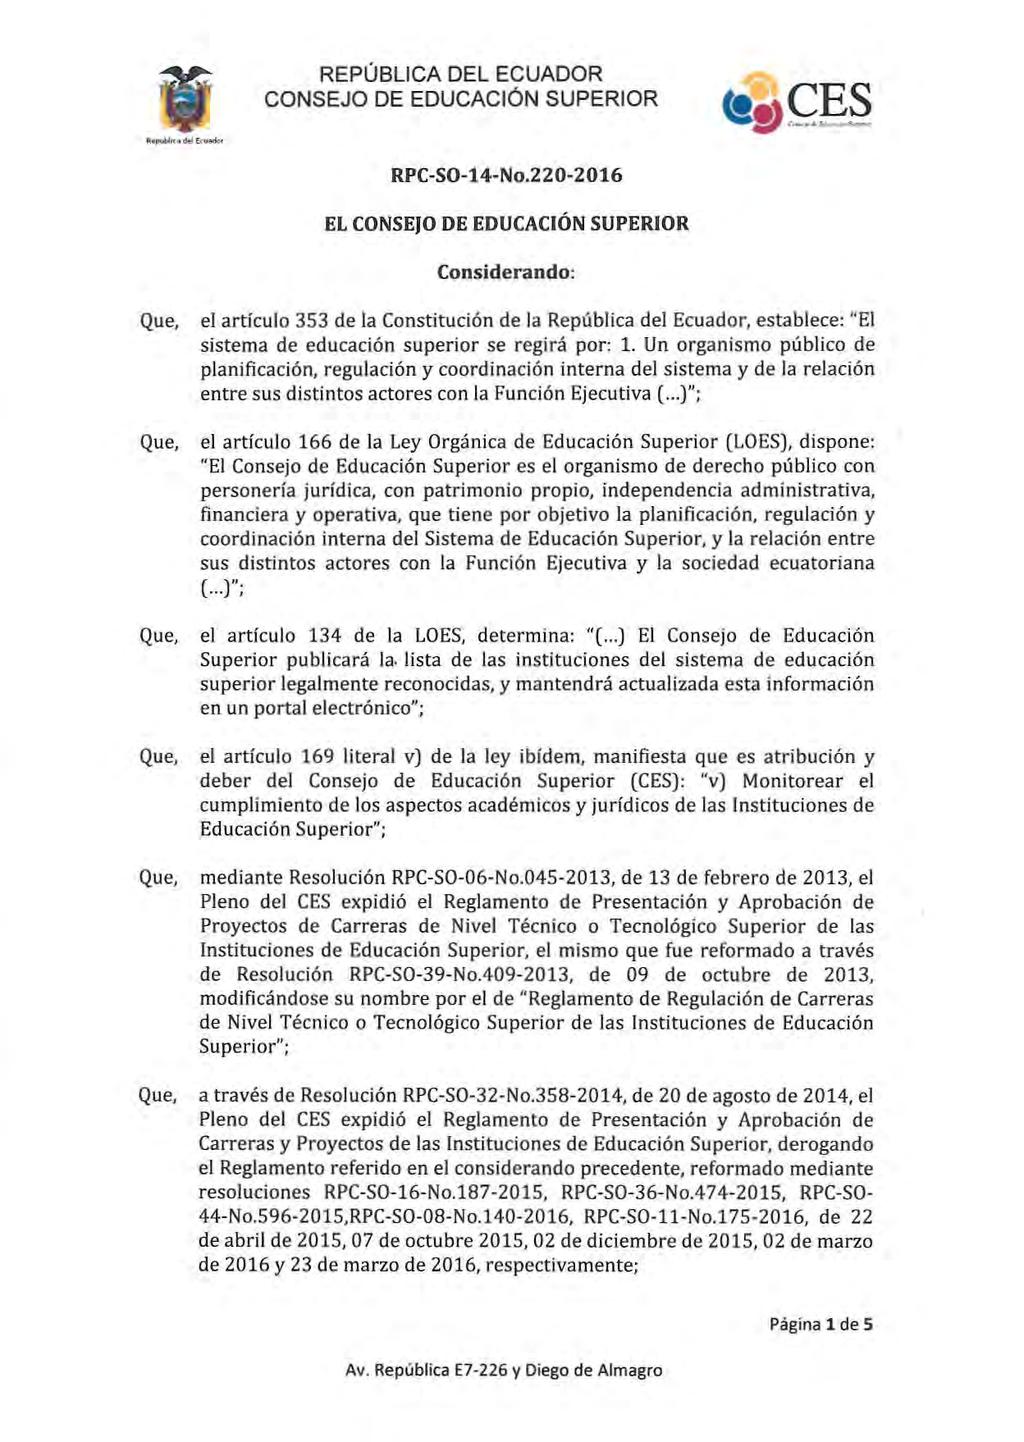 RPC-SO-14-No.220-2016 EL Considerando: el articulo 353 de la Constitución de la República del Ecuador, establece; "El sistema de educación superior se regirá por: 1.